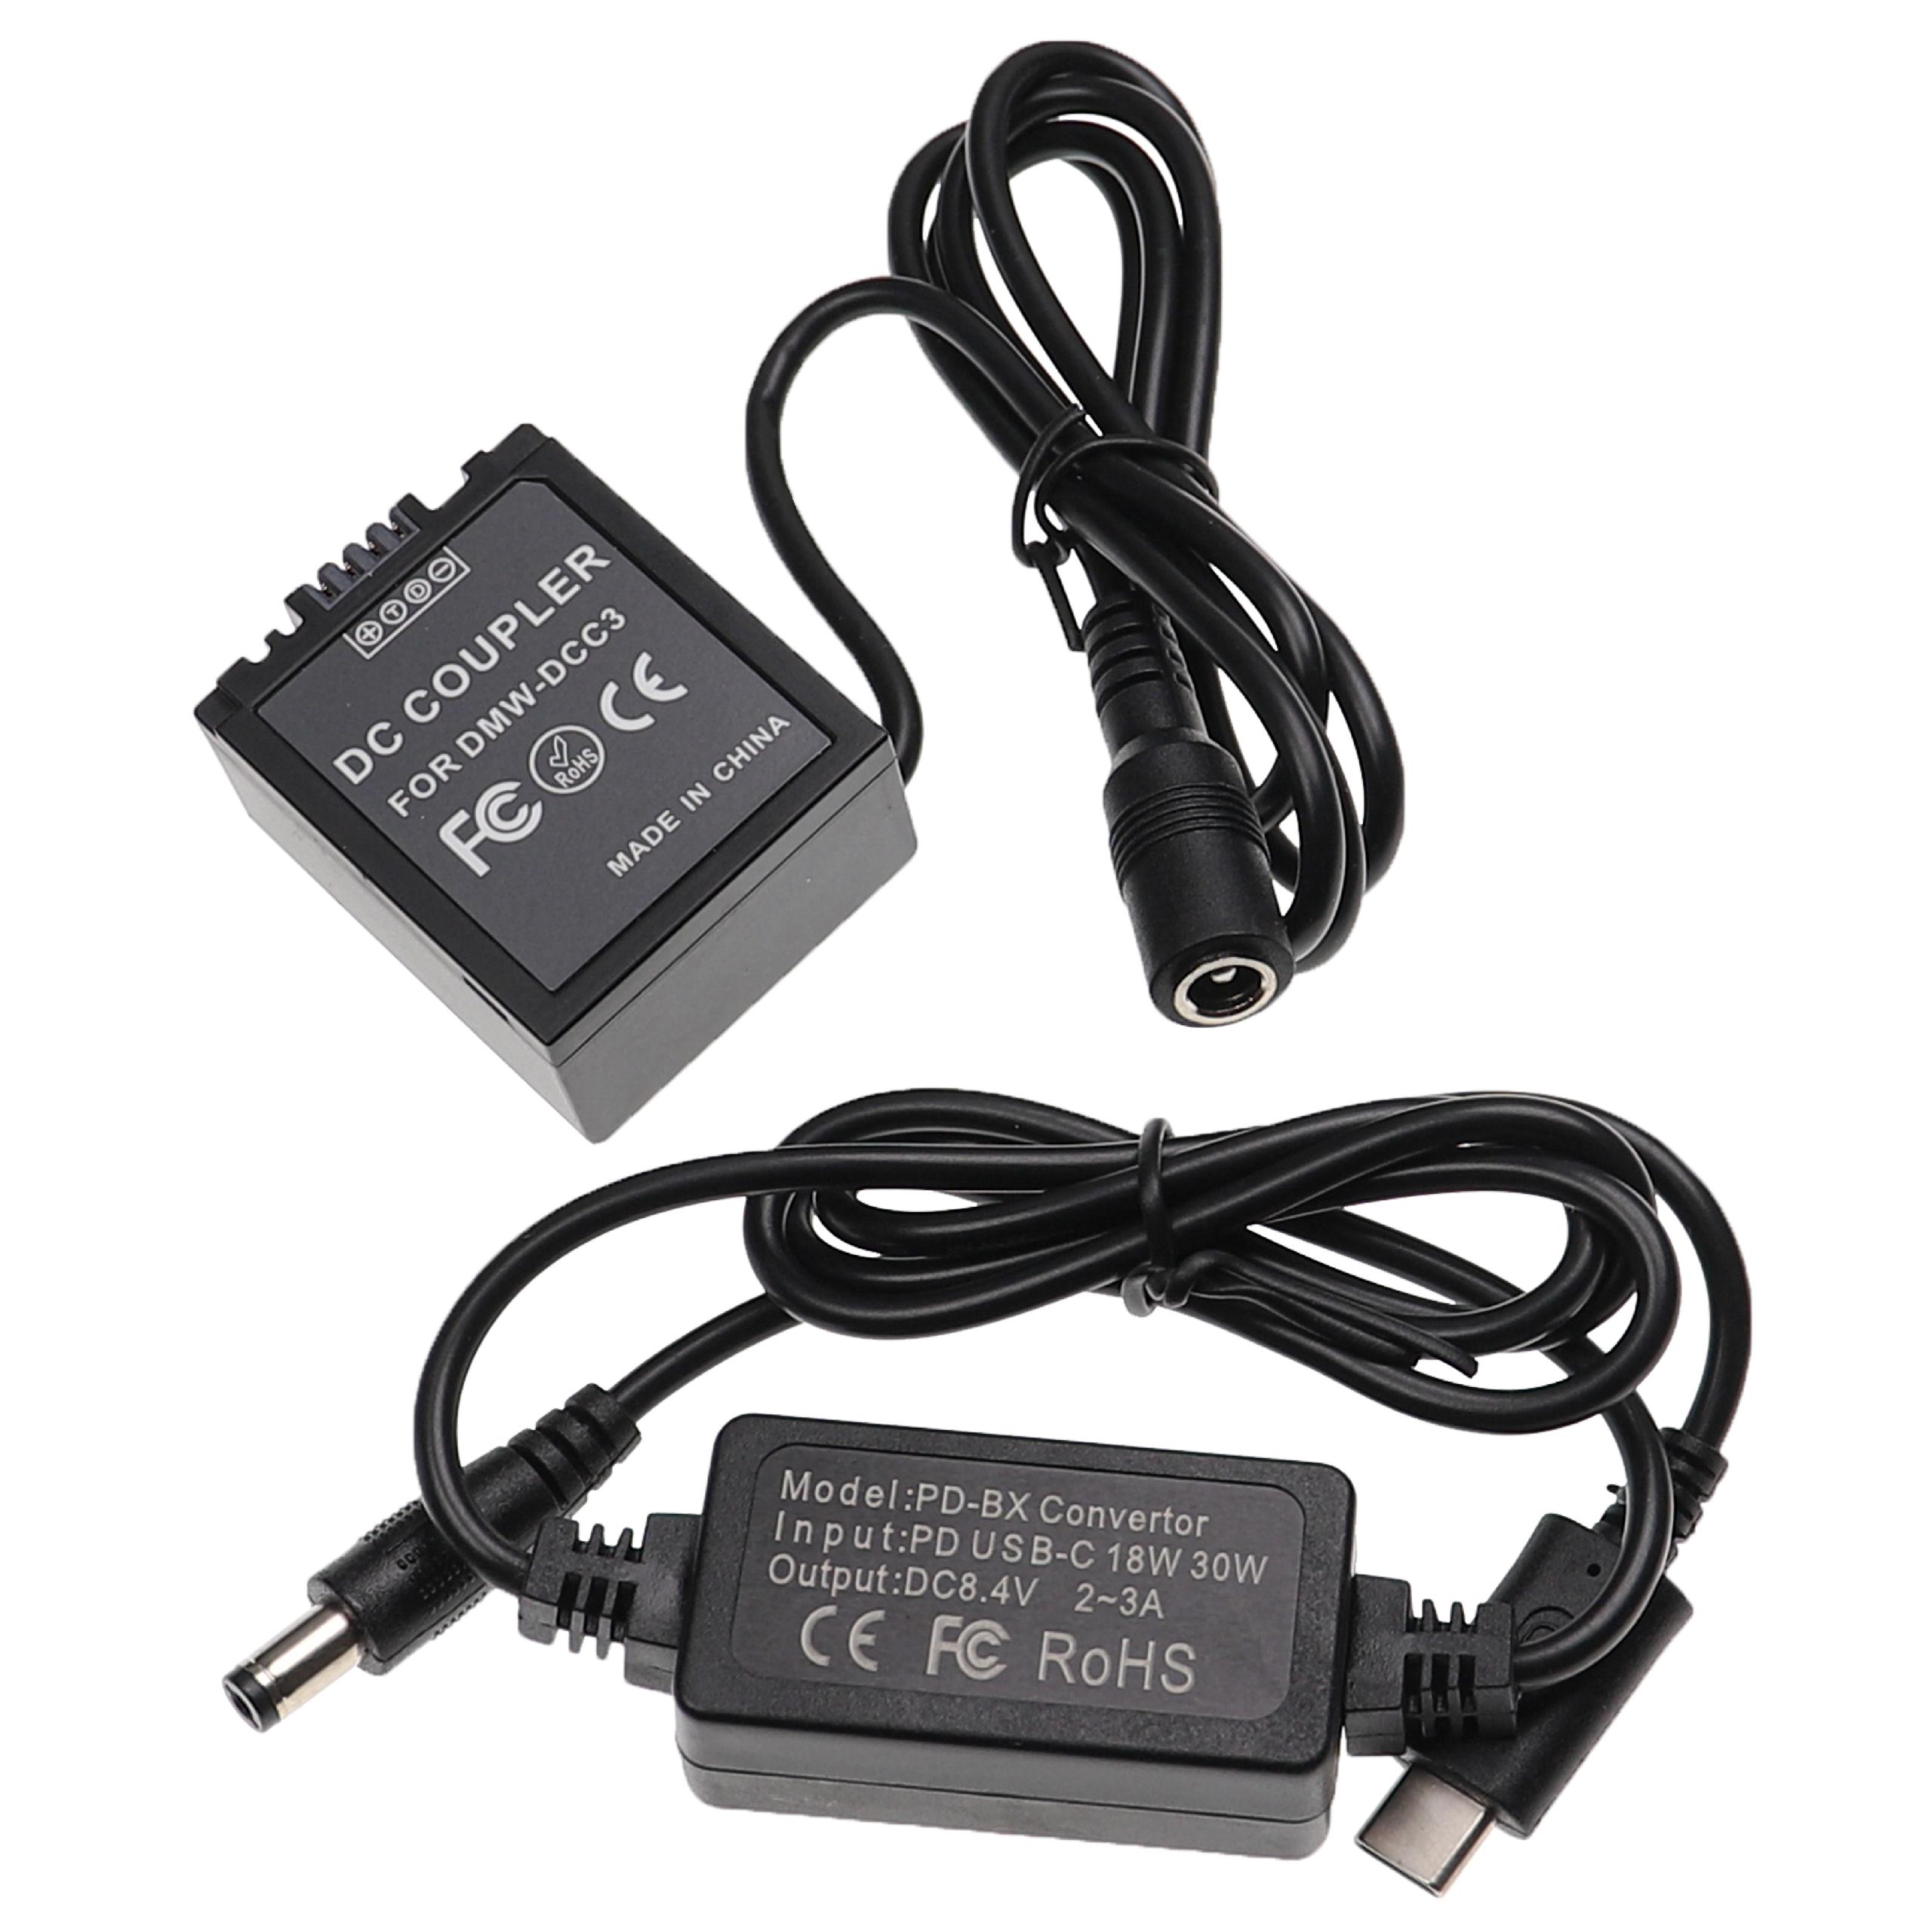 USB Netzteil als Ersatz für Panasonic DMW-AC8 für Kamera + DC Kuppler ersetzt Panasonic DMW-DCC3